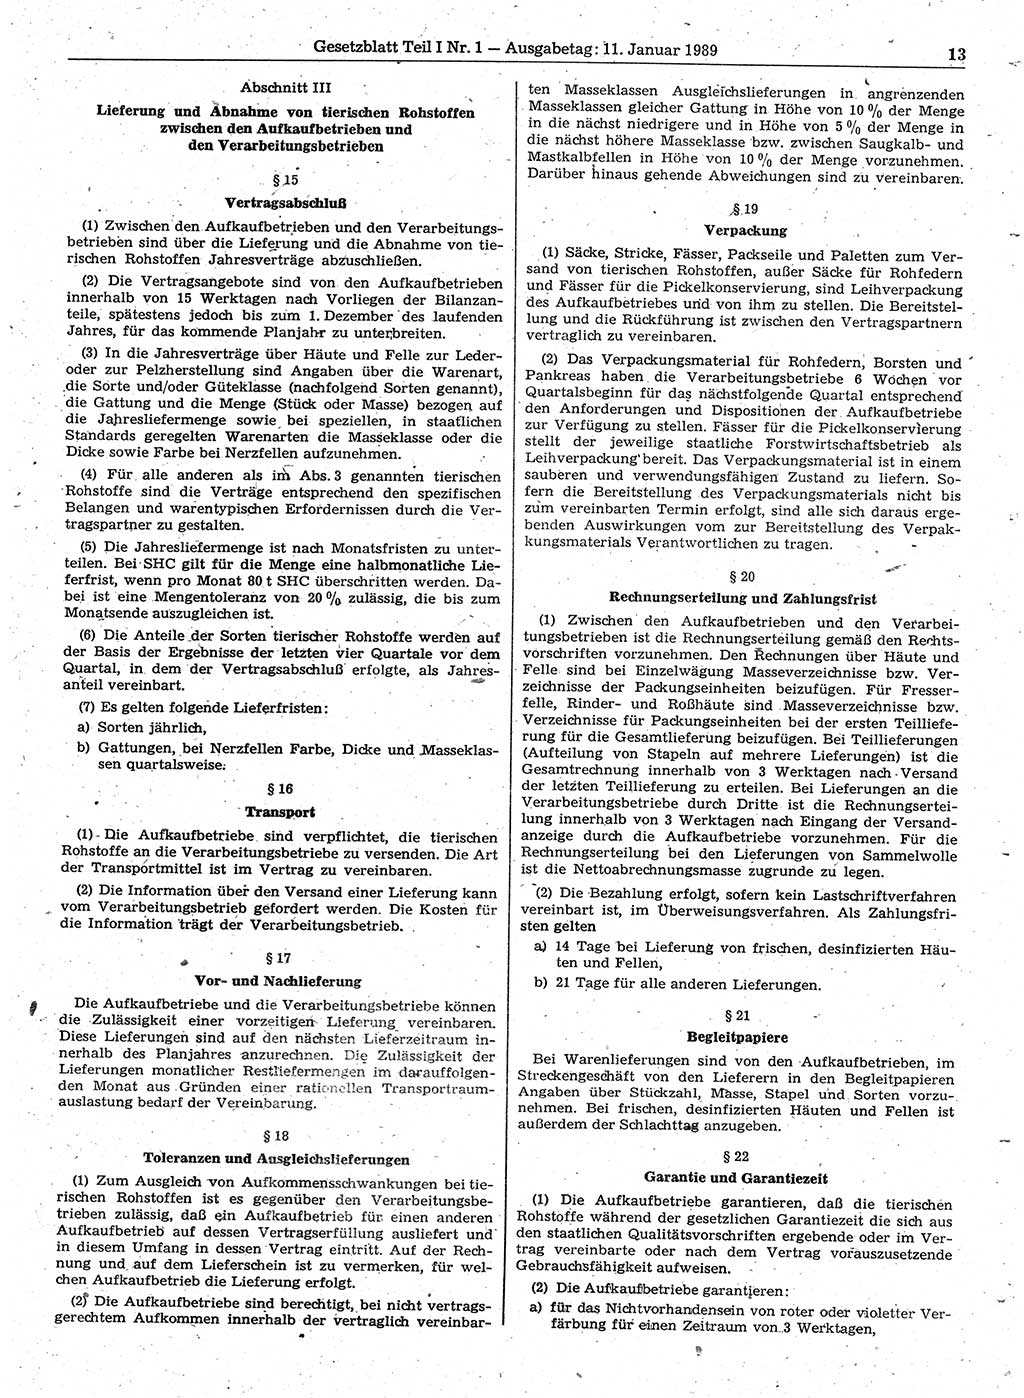 Gesetzblatt (GBl.) der Deutschen Demokratischen Republik (DDR) Teil Ⅰ 1989, Seite 13 (GBl. DDR Ⅰ 1989, S. 13)